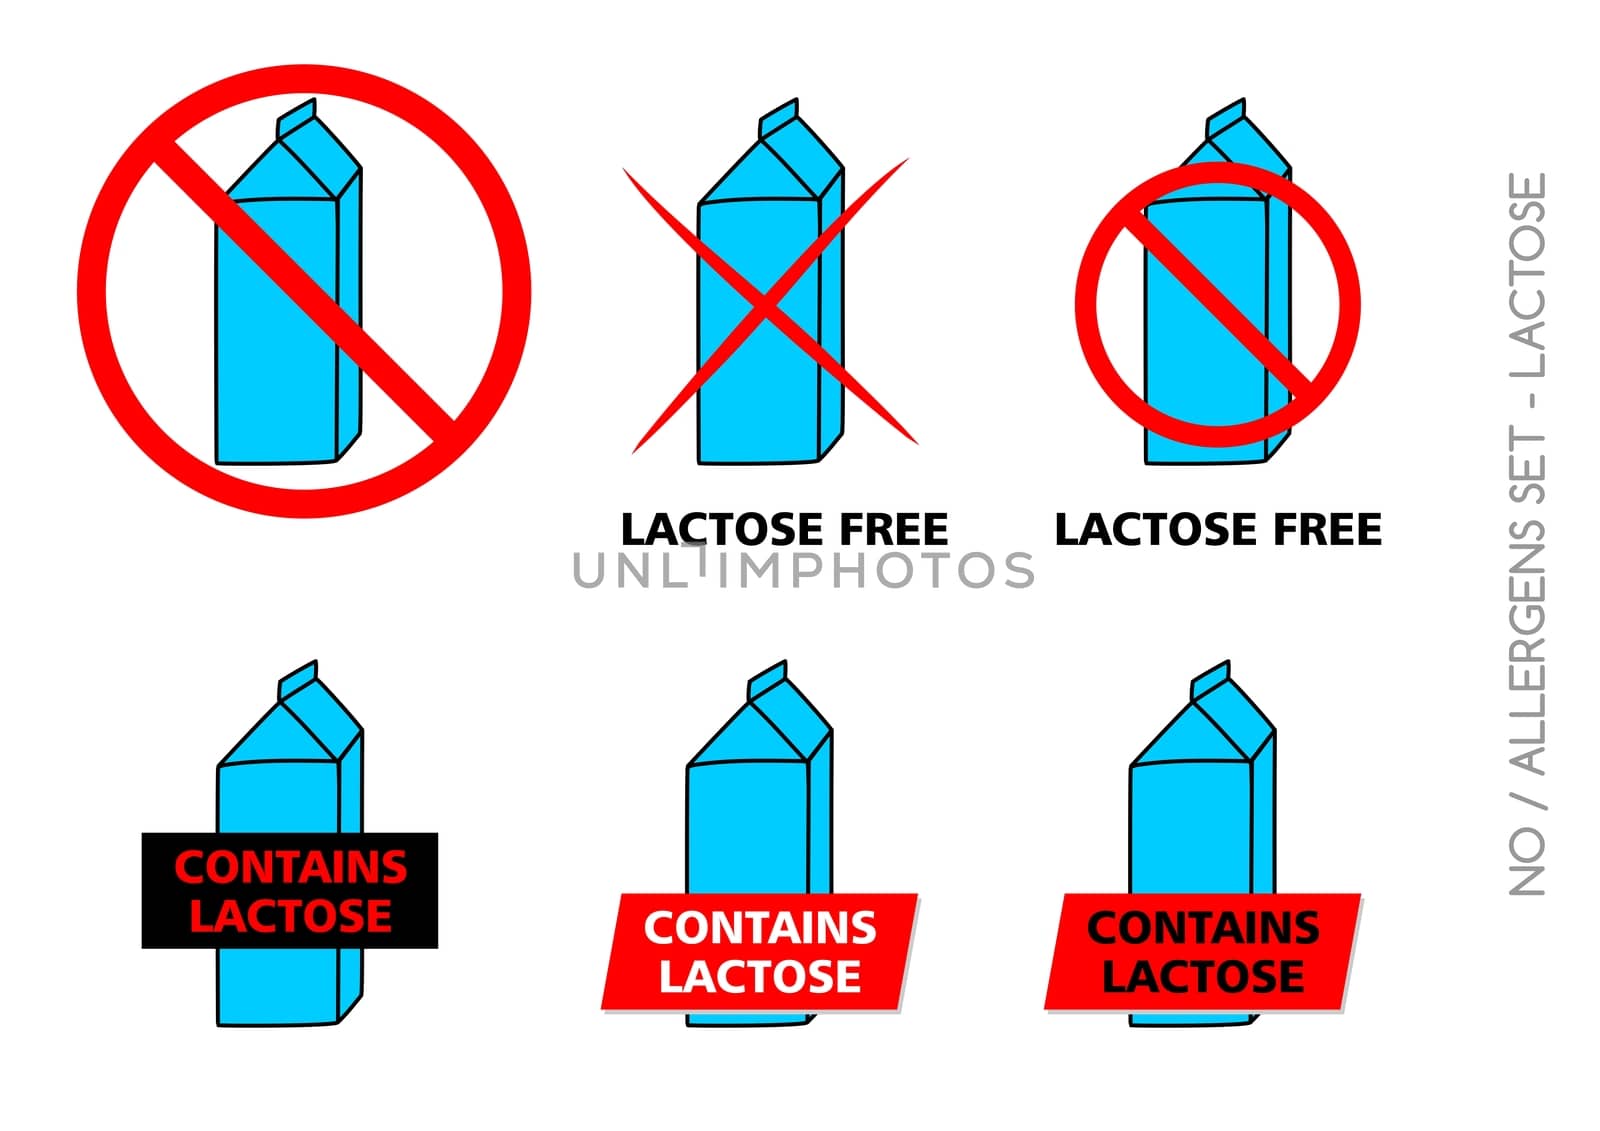 Lactose Free Symbols isolated on white background